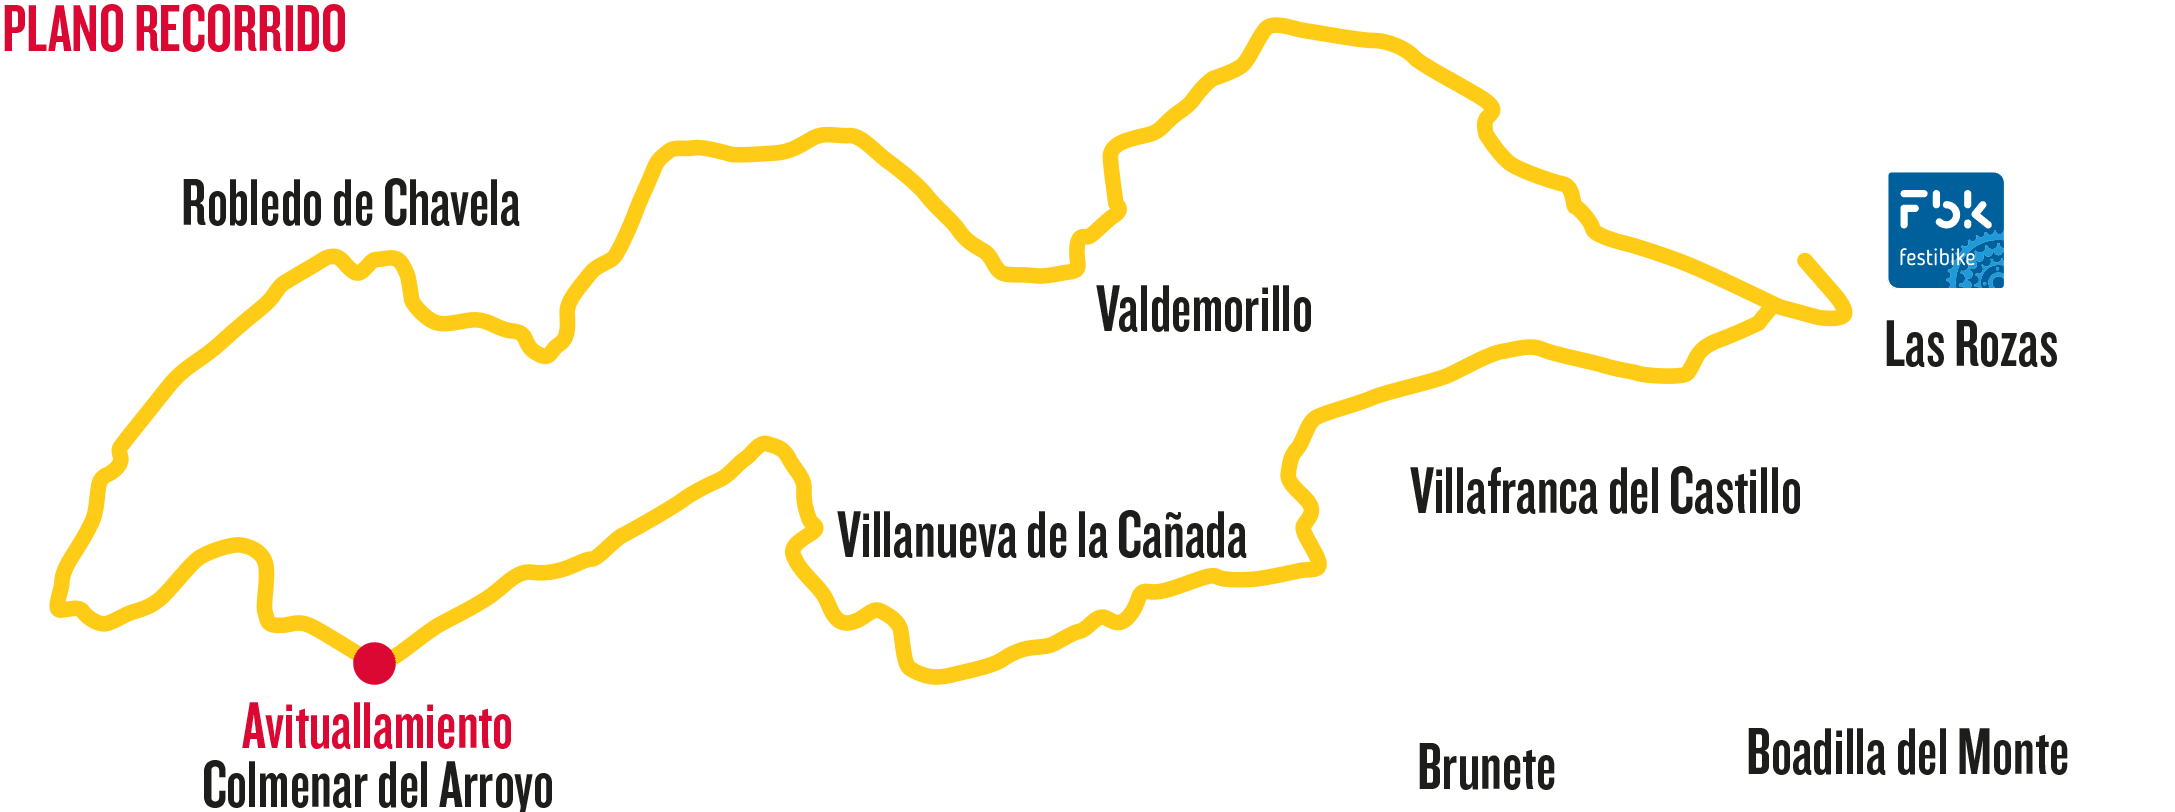 Festibike presenta su Marcha Cicloturista Cofidis, de 110 kilómetros por la Sierra Oeste de Madrid